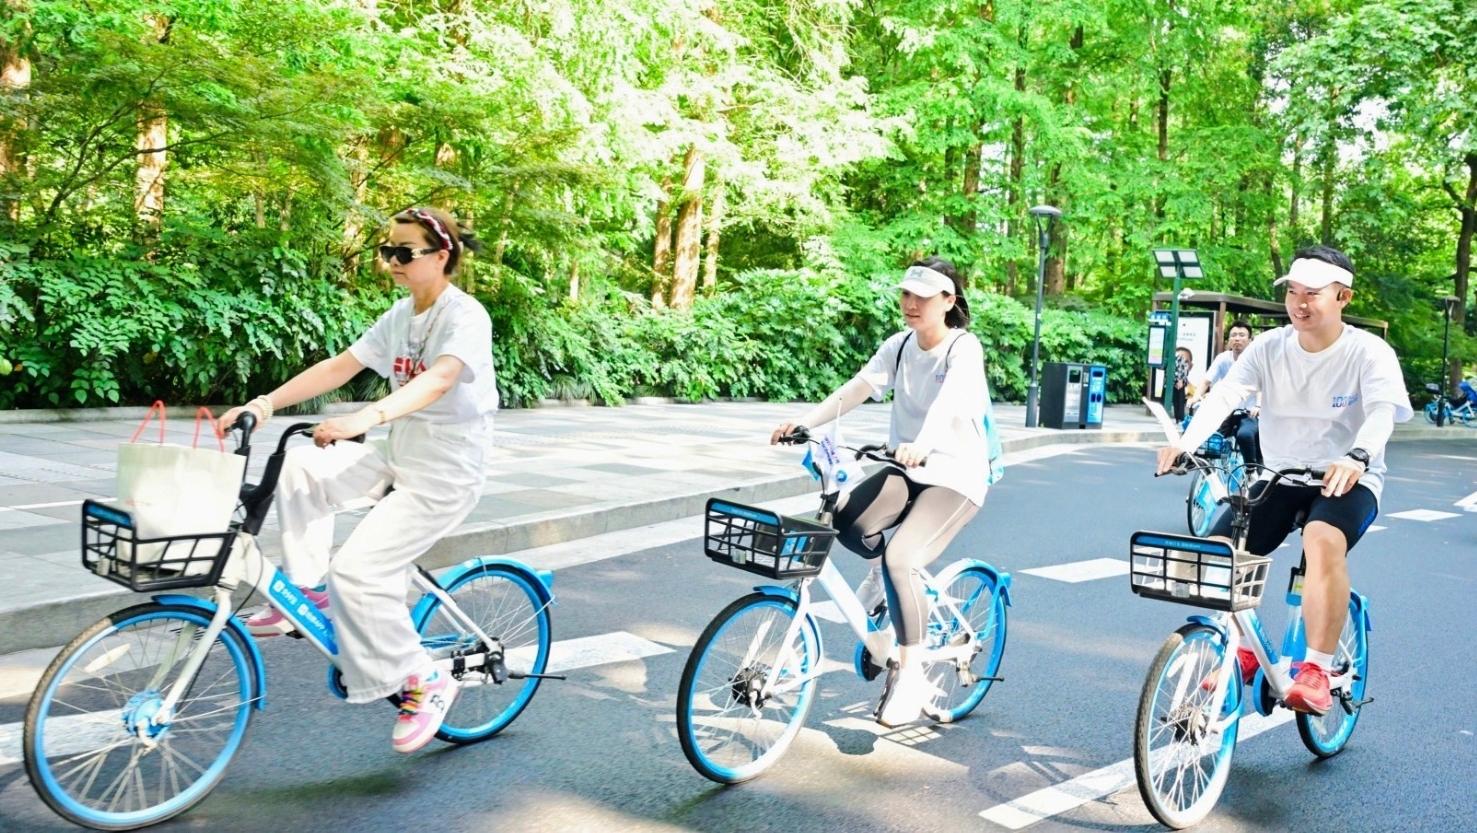 春风十里不如骑上共享单车去踏青 深圳人骑行出游需求涨幅超三成